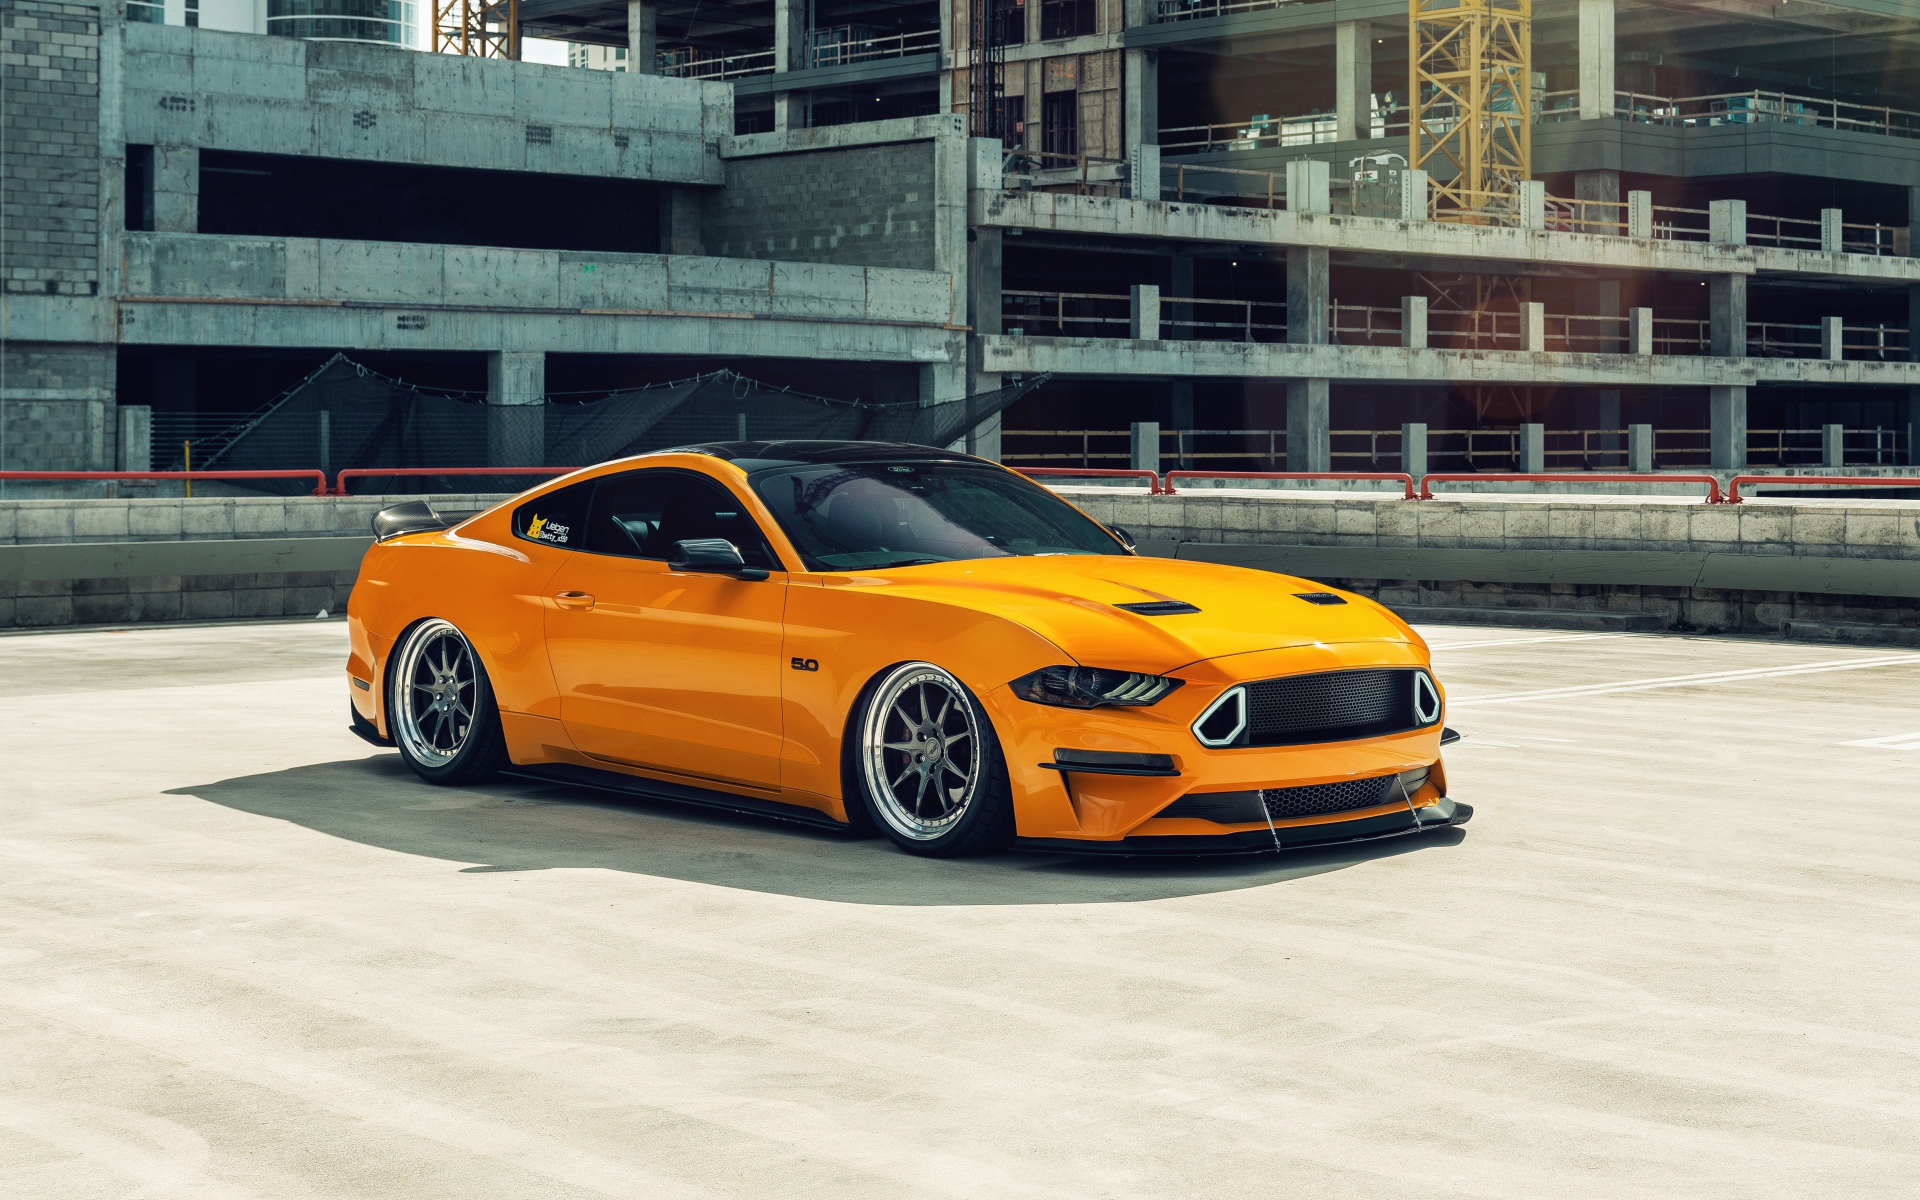 Оранжевый автомобиль Mustang у заброшенного здания 